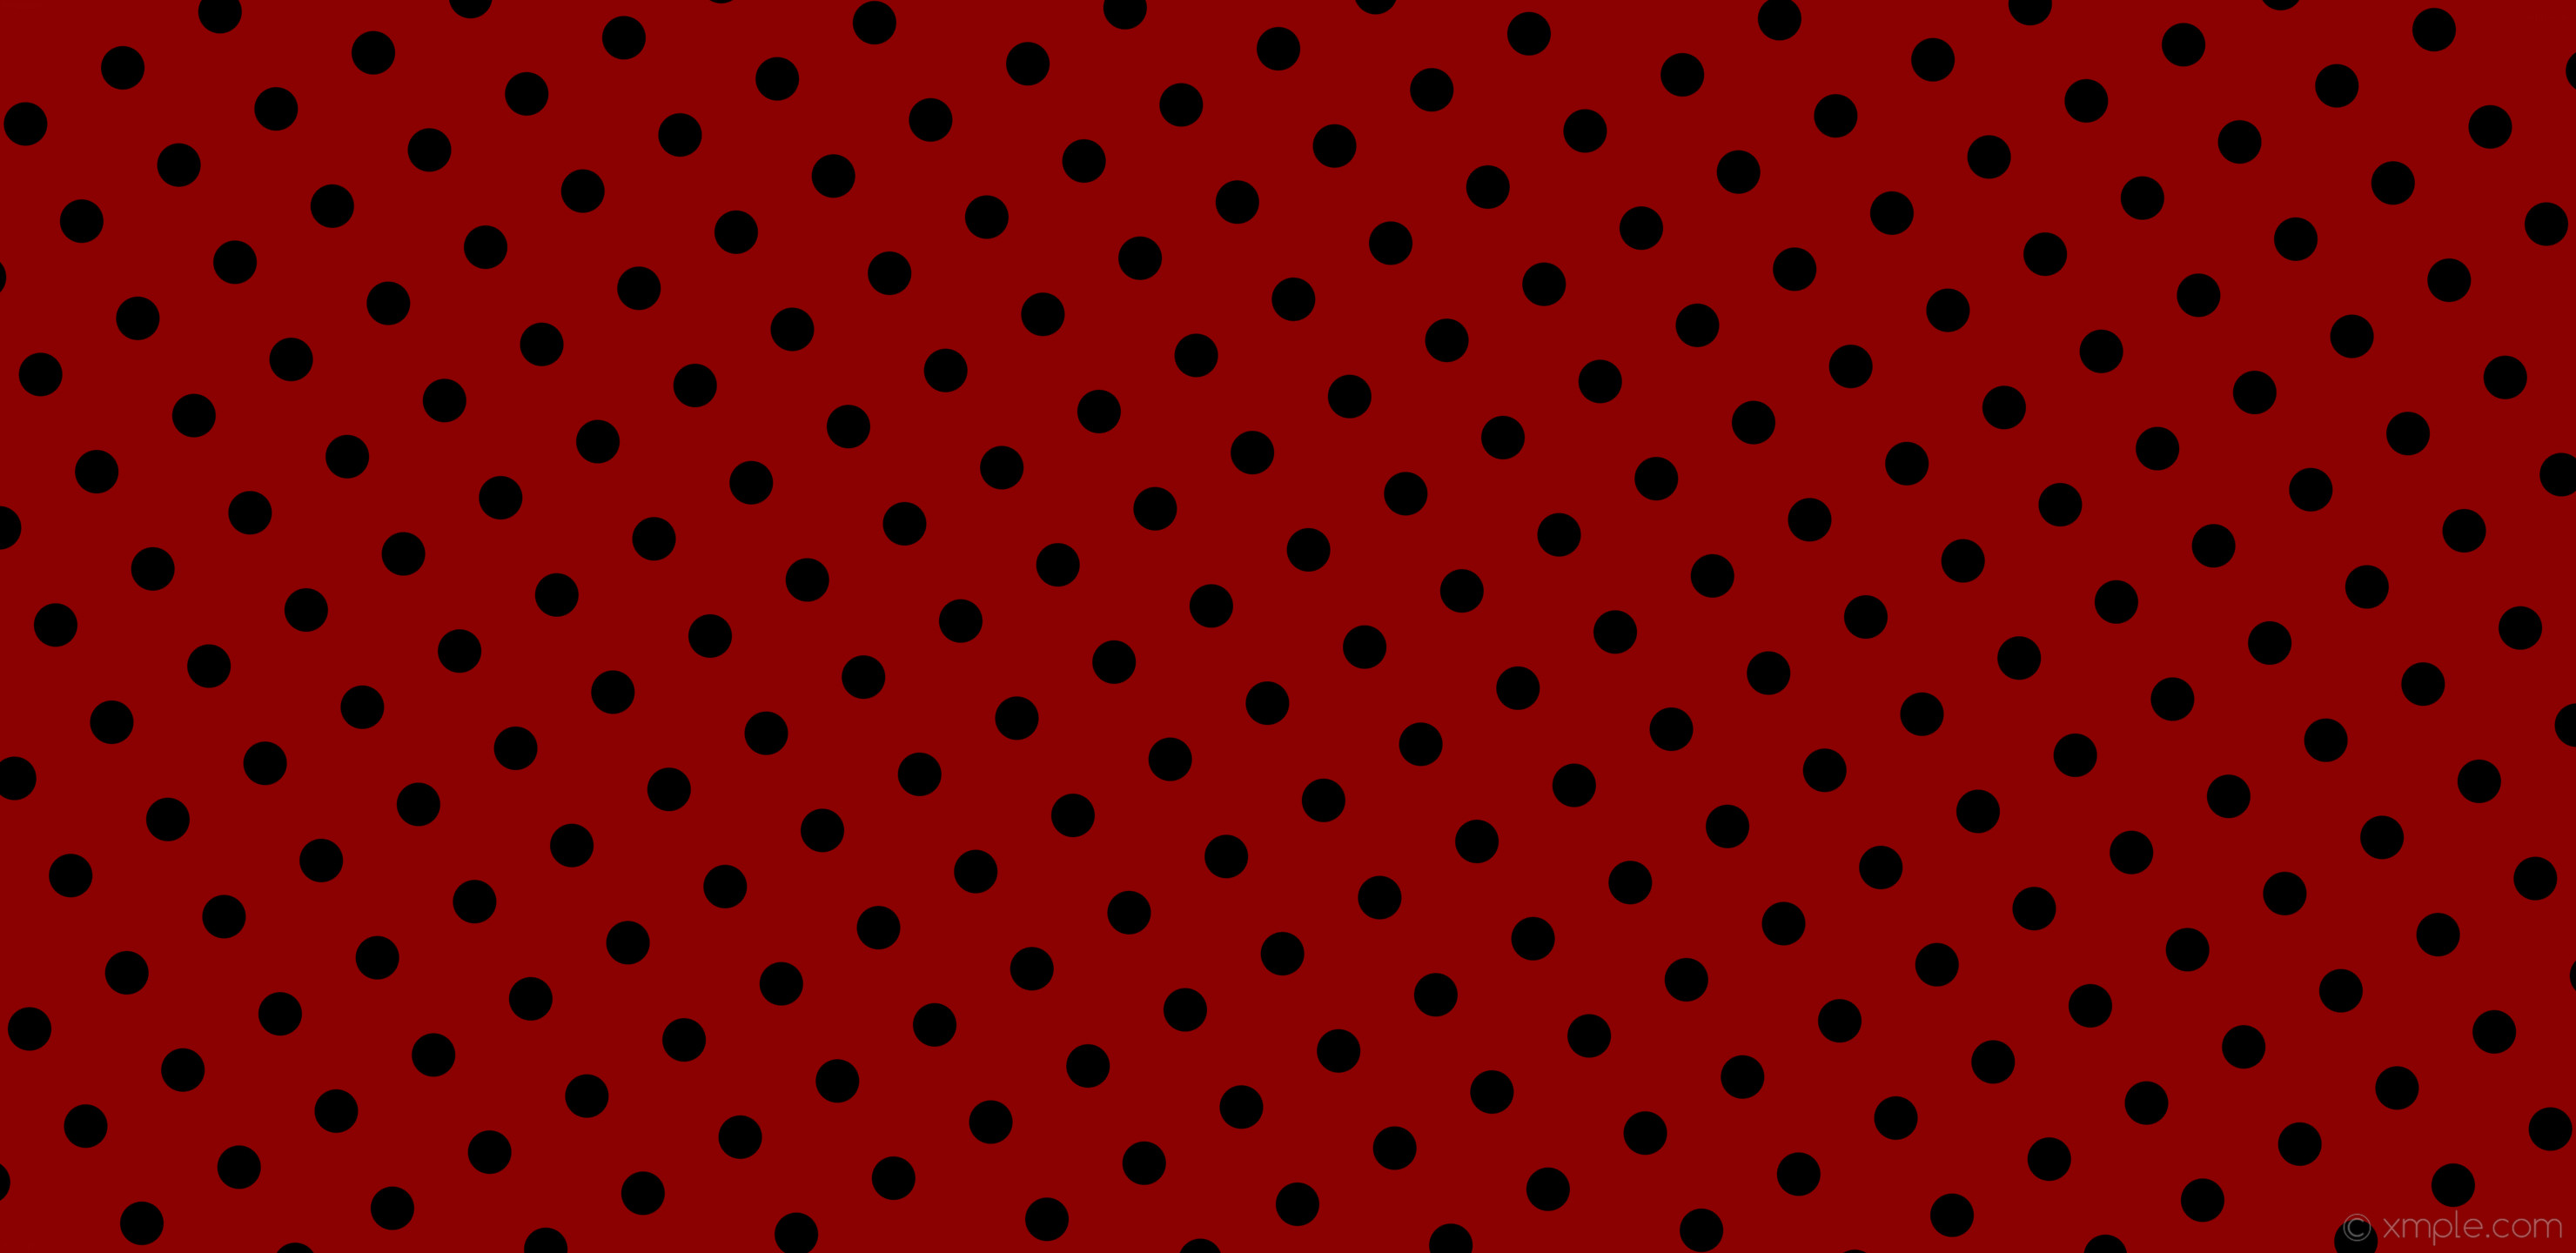 wallpaper red polka dots black spots dark red #8b0000 #000000 210Â° 50px  129px